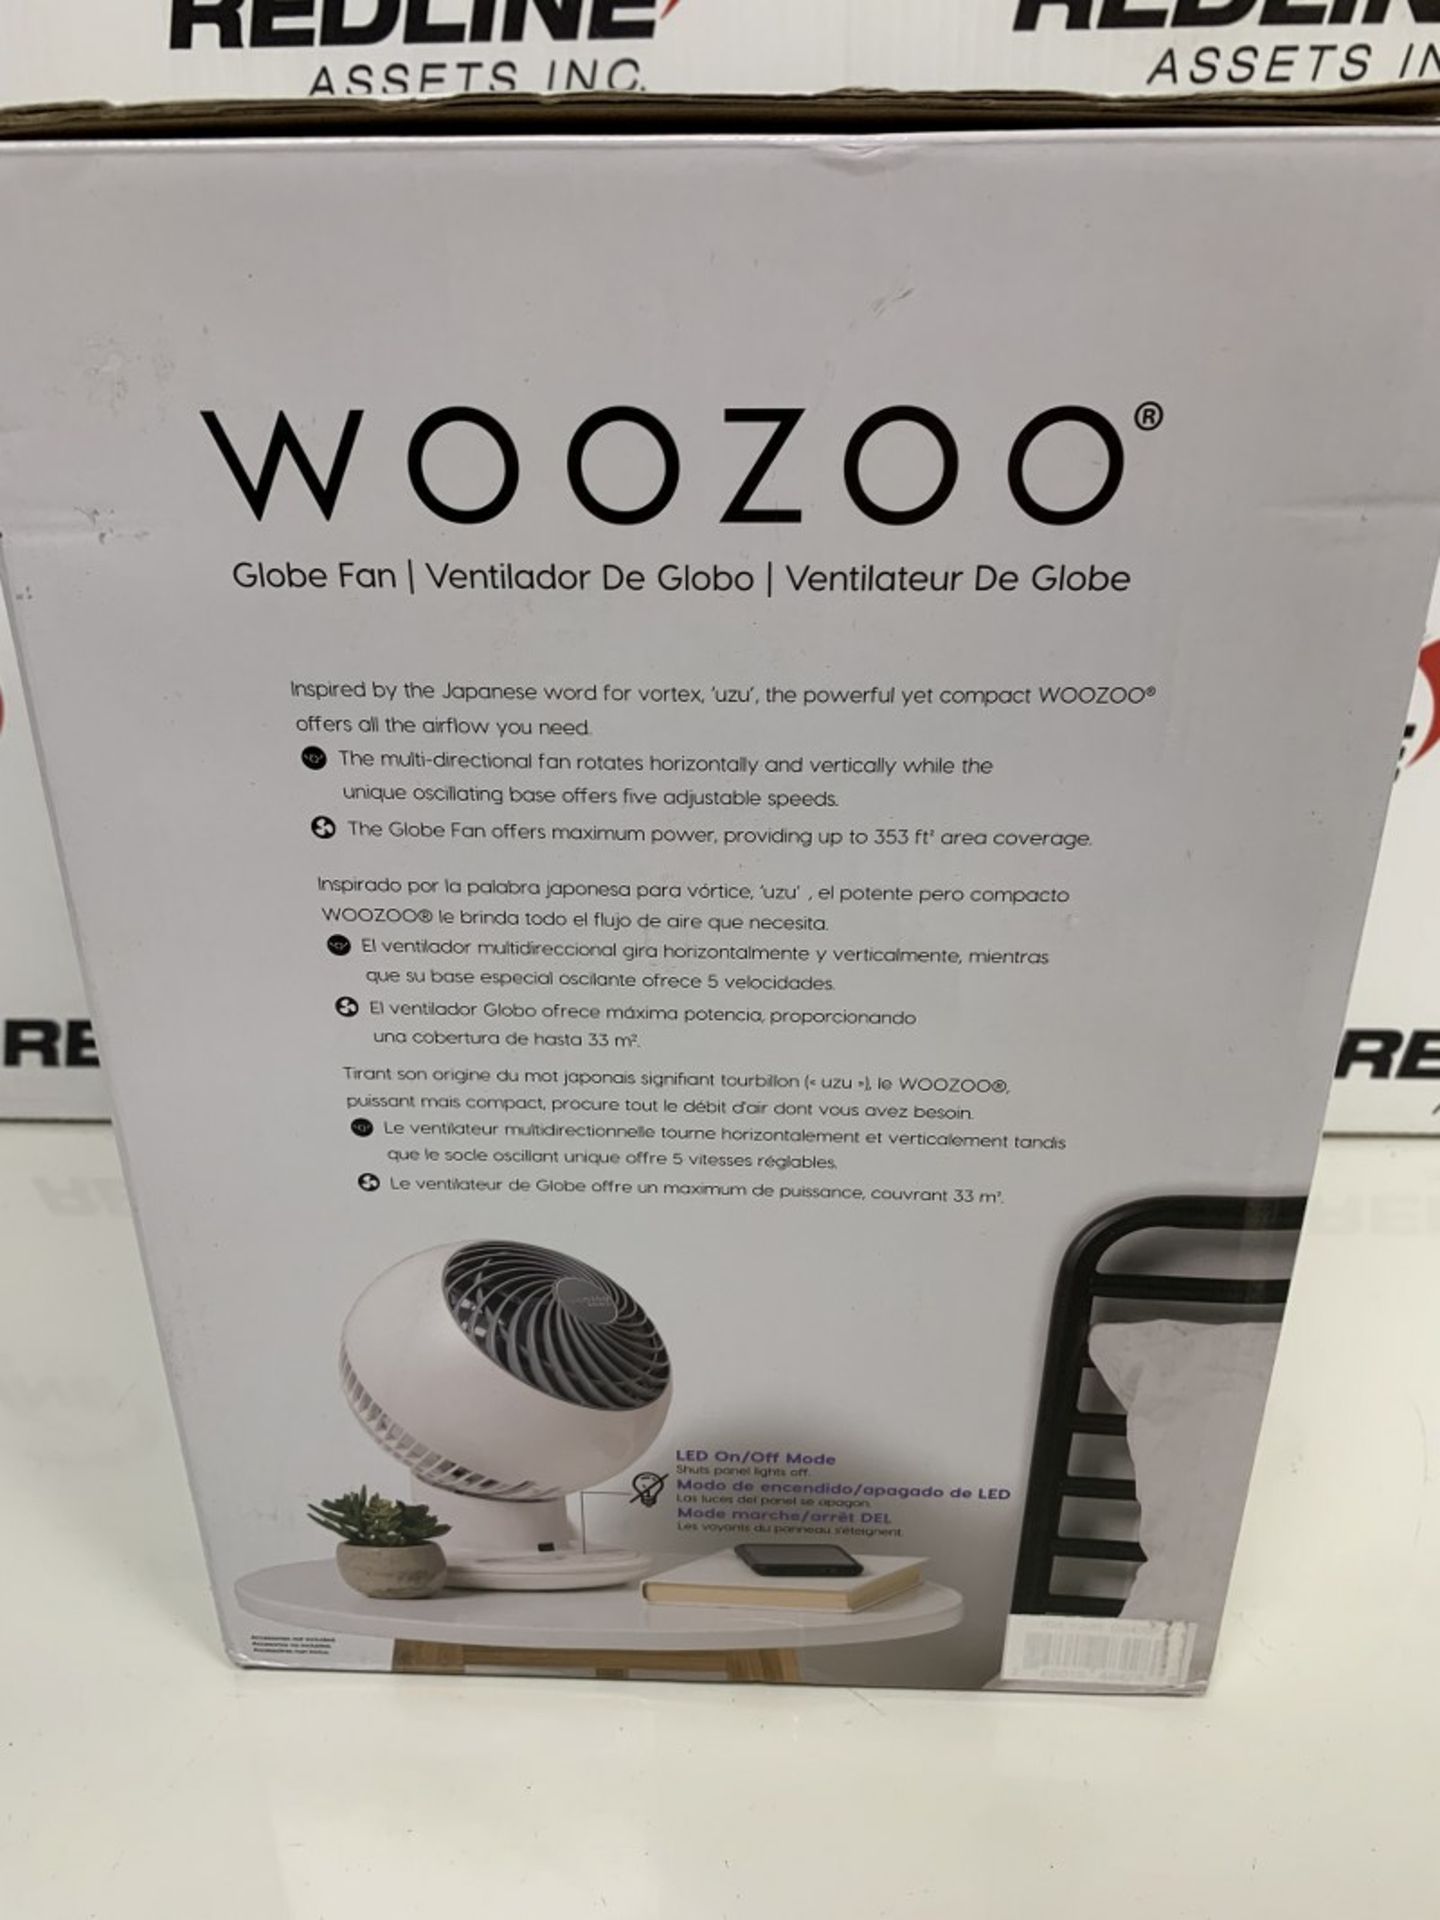 Woozoo - Globe Fan - Image 2 of 2